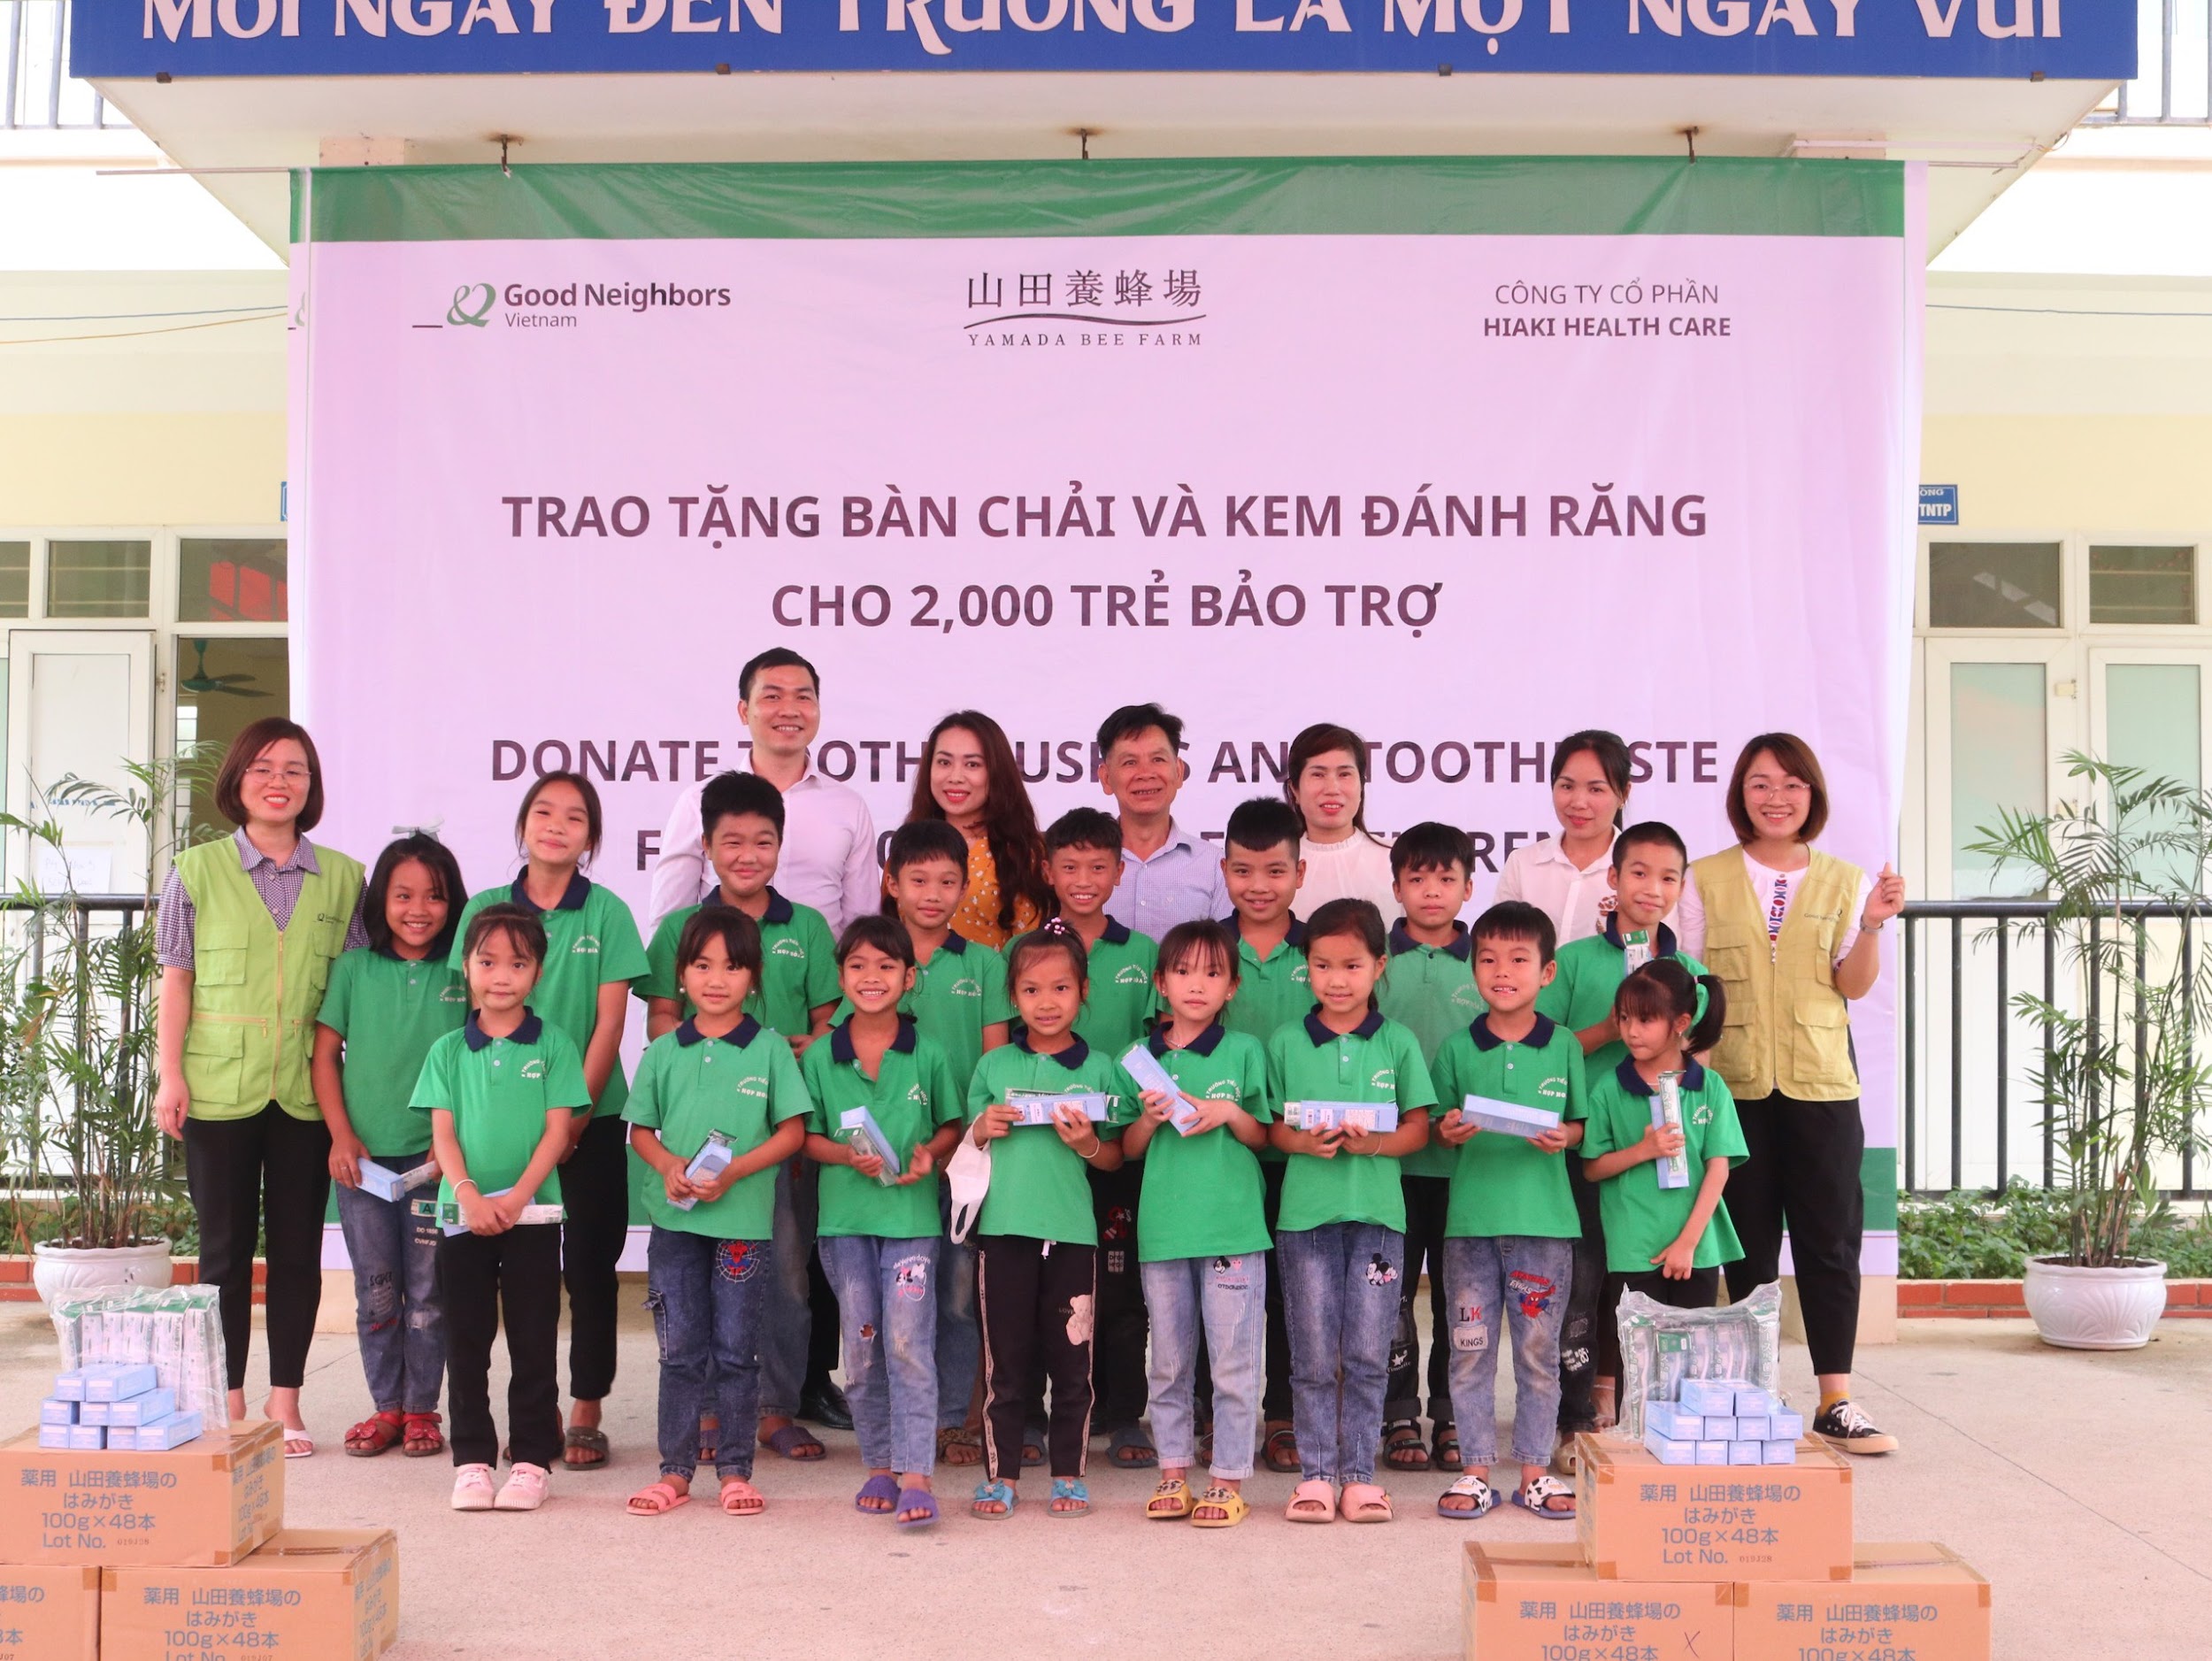 Hiaki Health Care cùng quỹ bảo trợ trẻ em GNI đồng tổ chức thực hiện chương trình từ thiện trao quà cho trẻ em tỉnh Tuyên Quang - 4